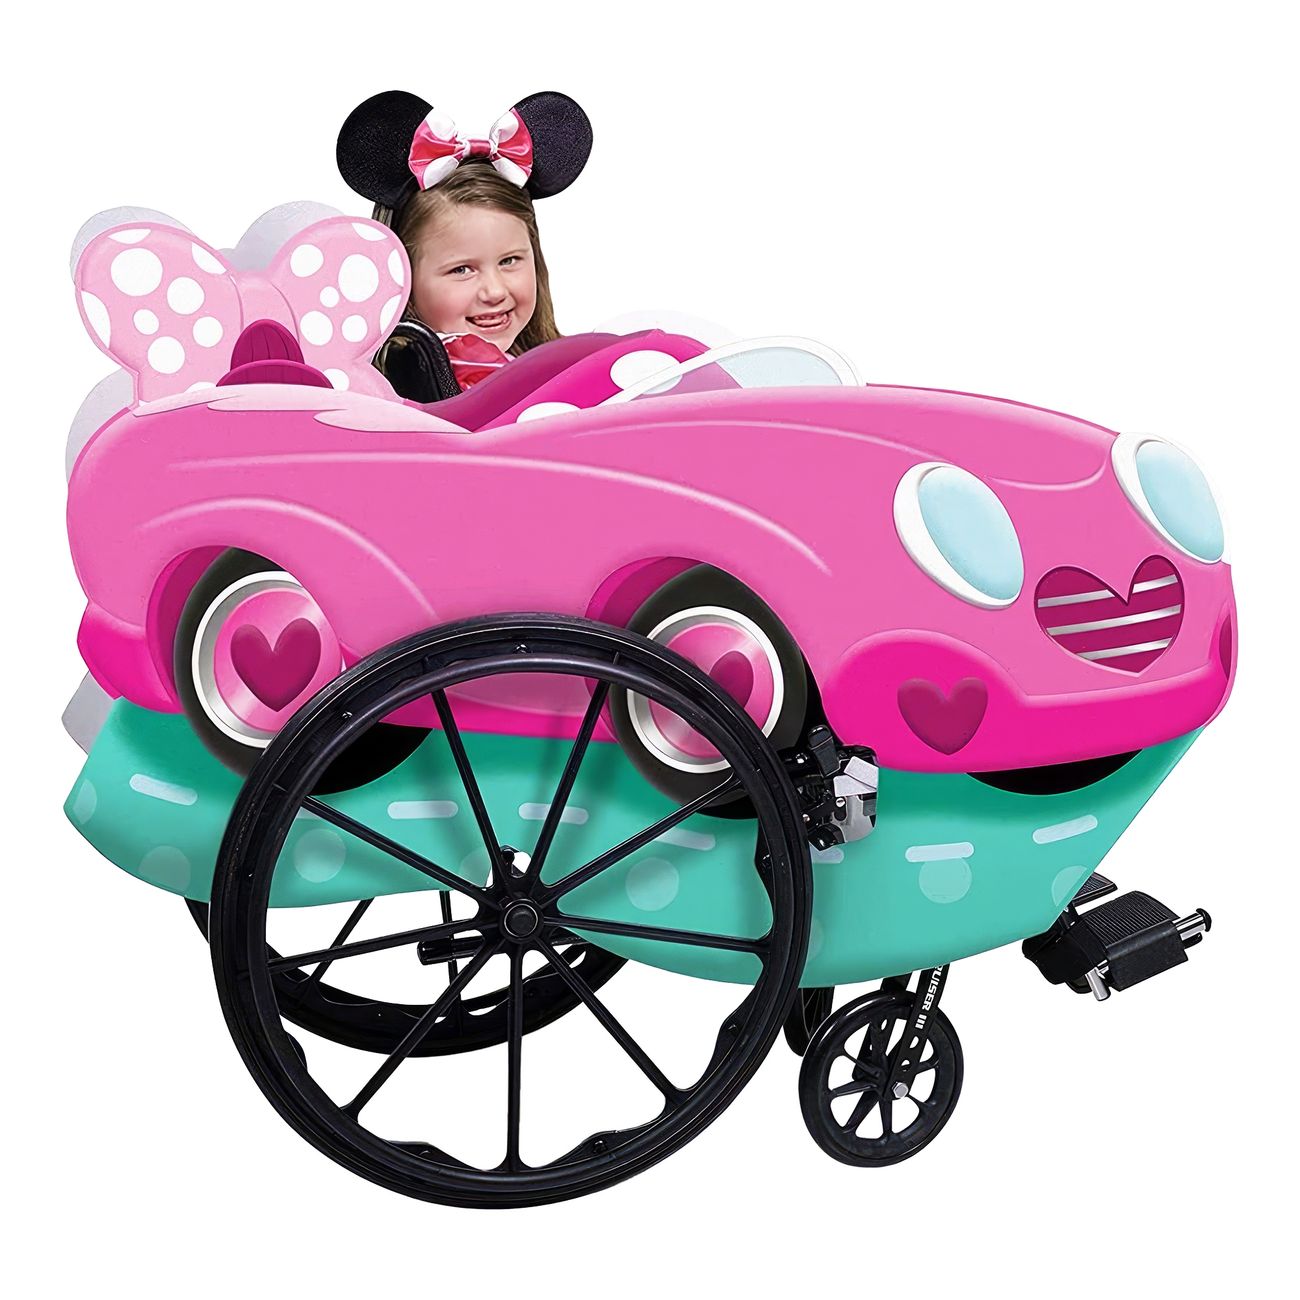 Kørestolskostume Disney Minnie Mouse - Minnie Mouse kostume til børn